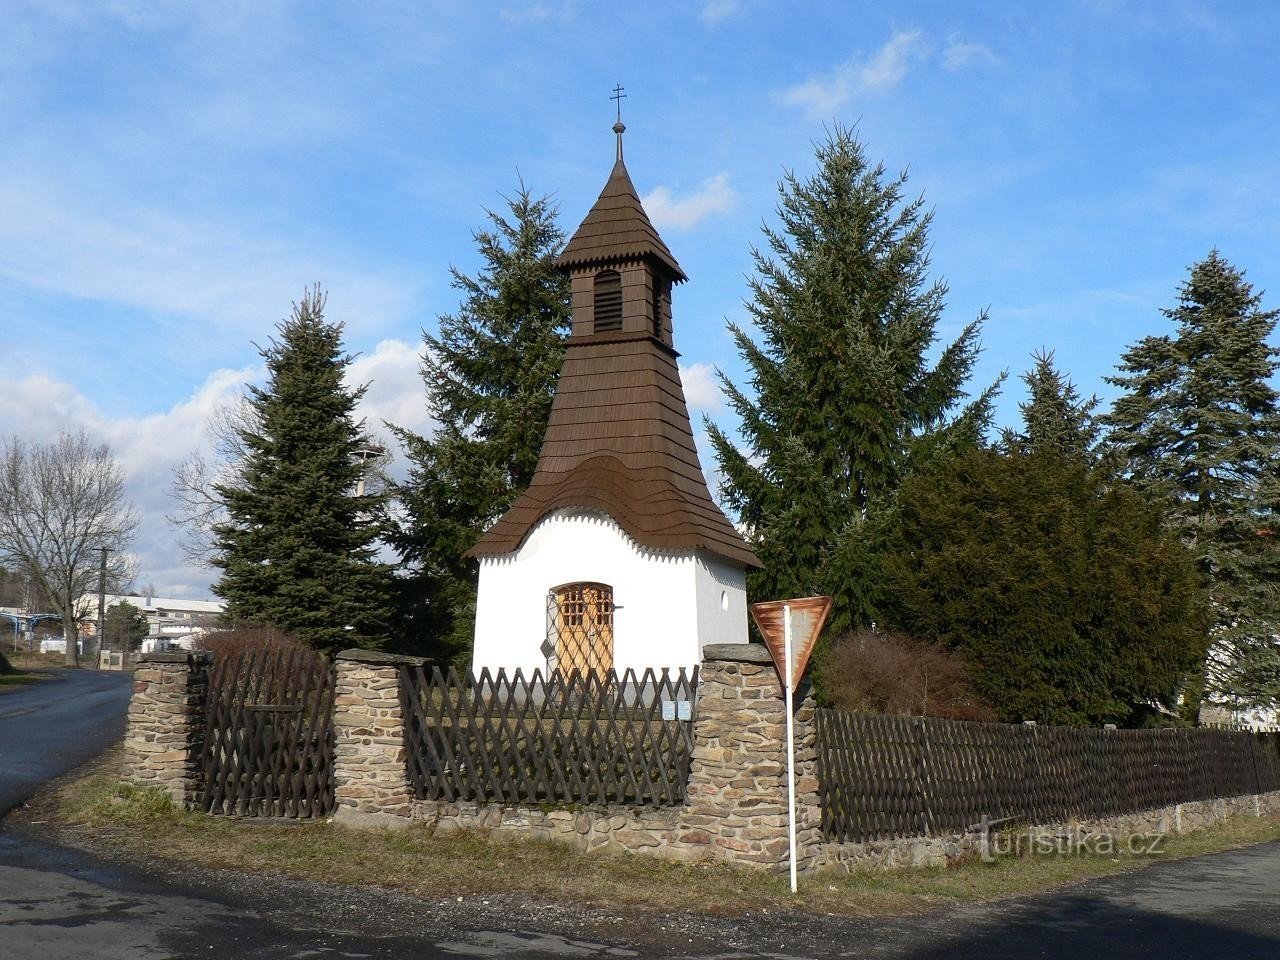 Dražovice, pequeno parque com capela